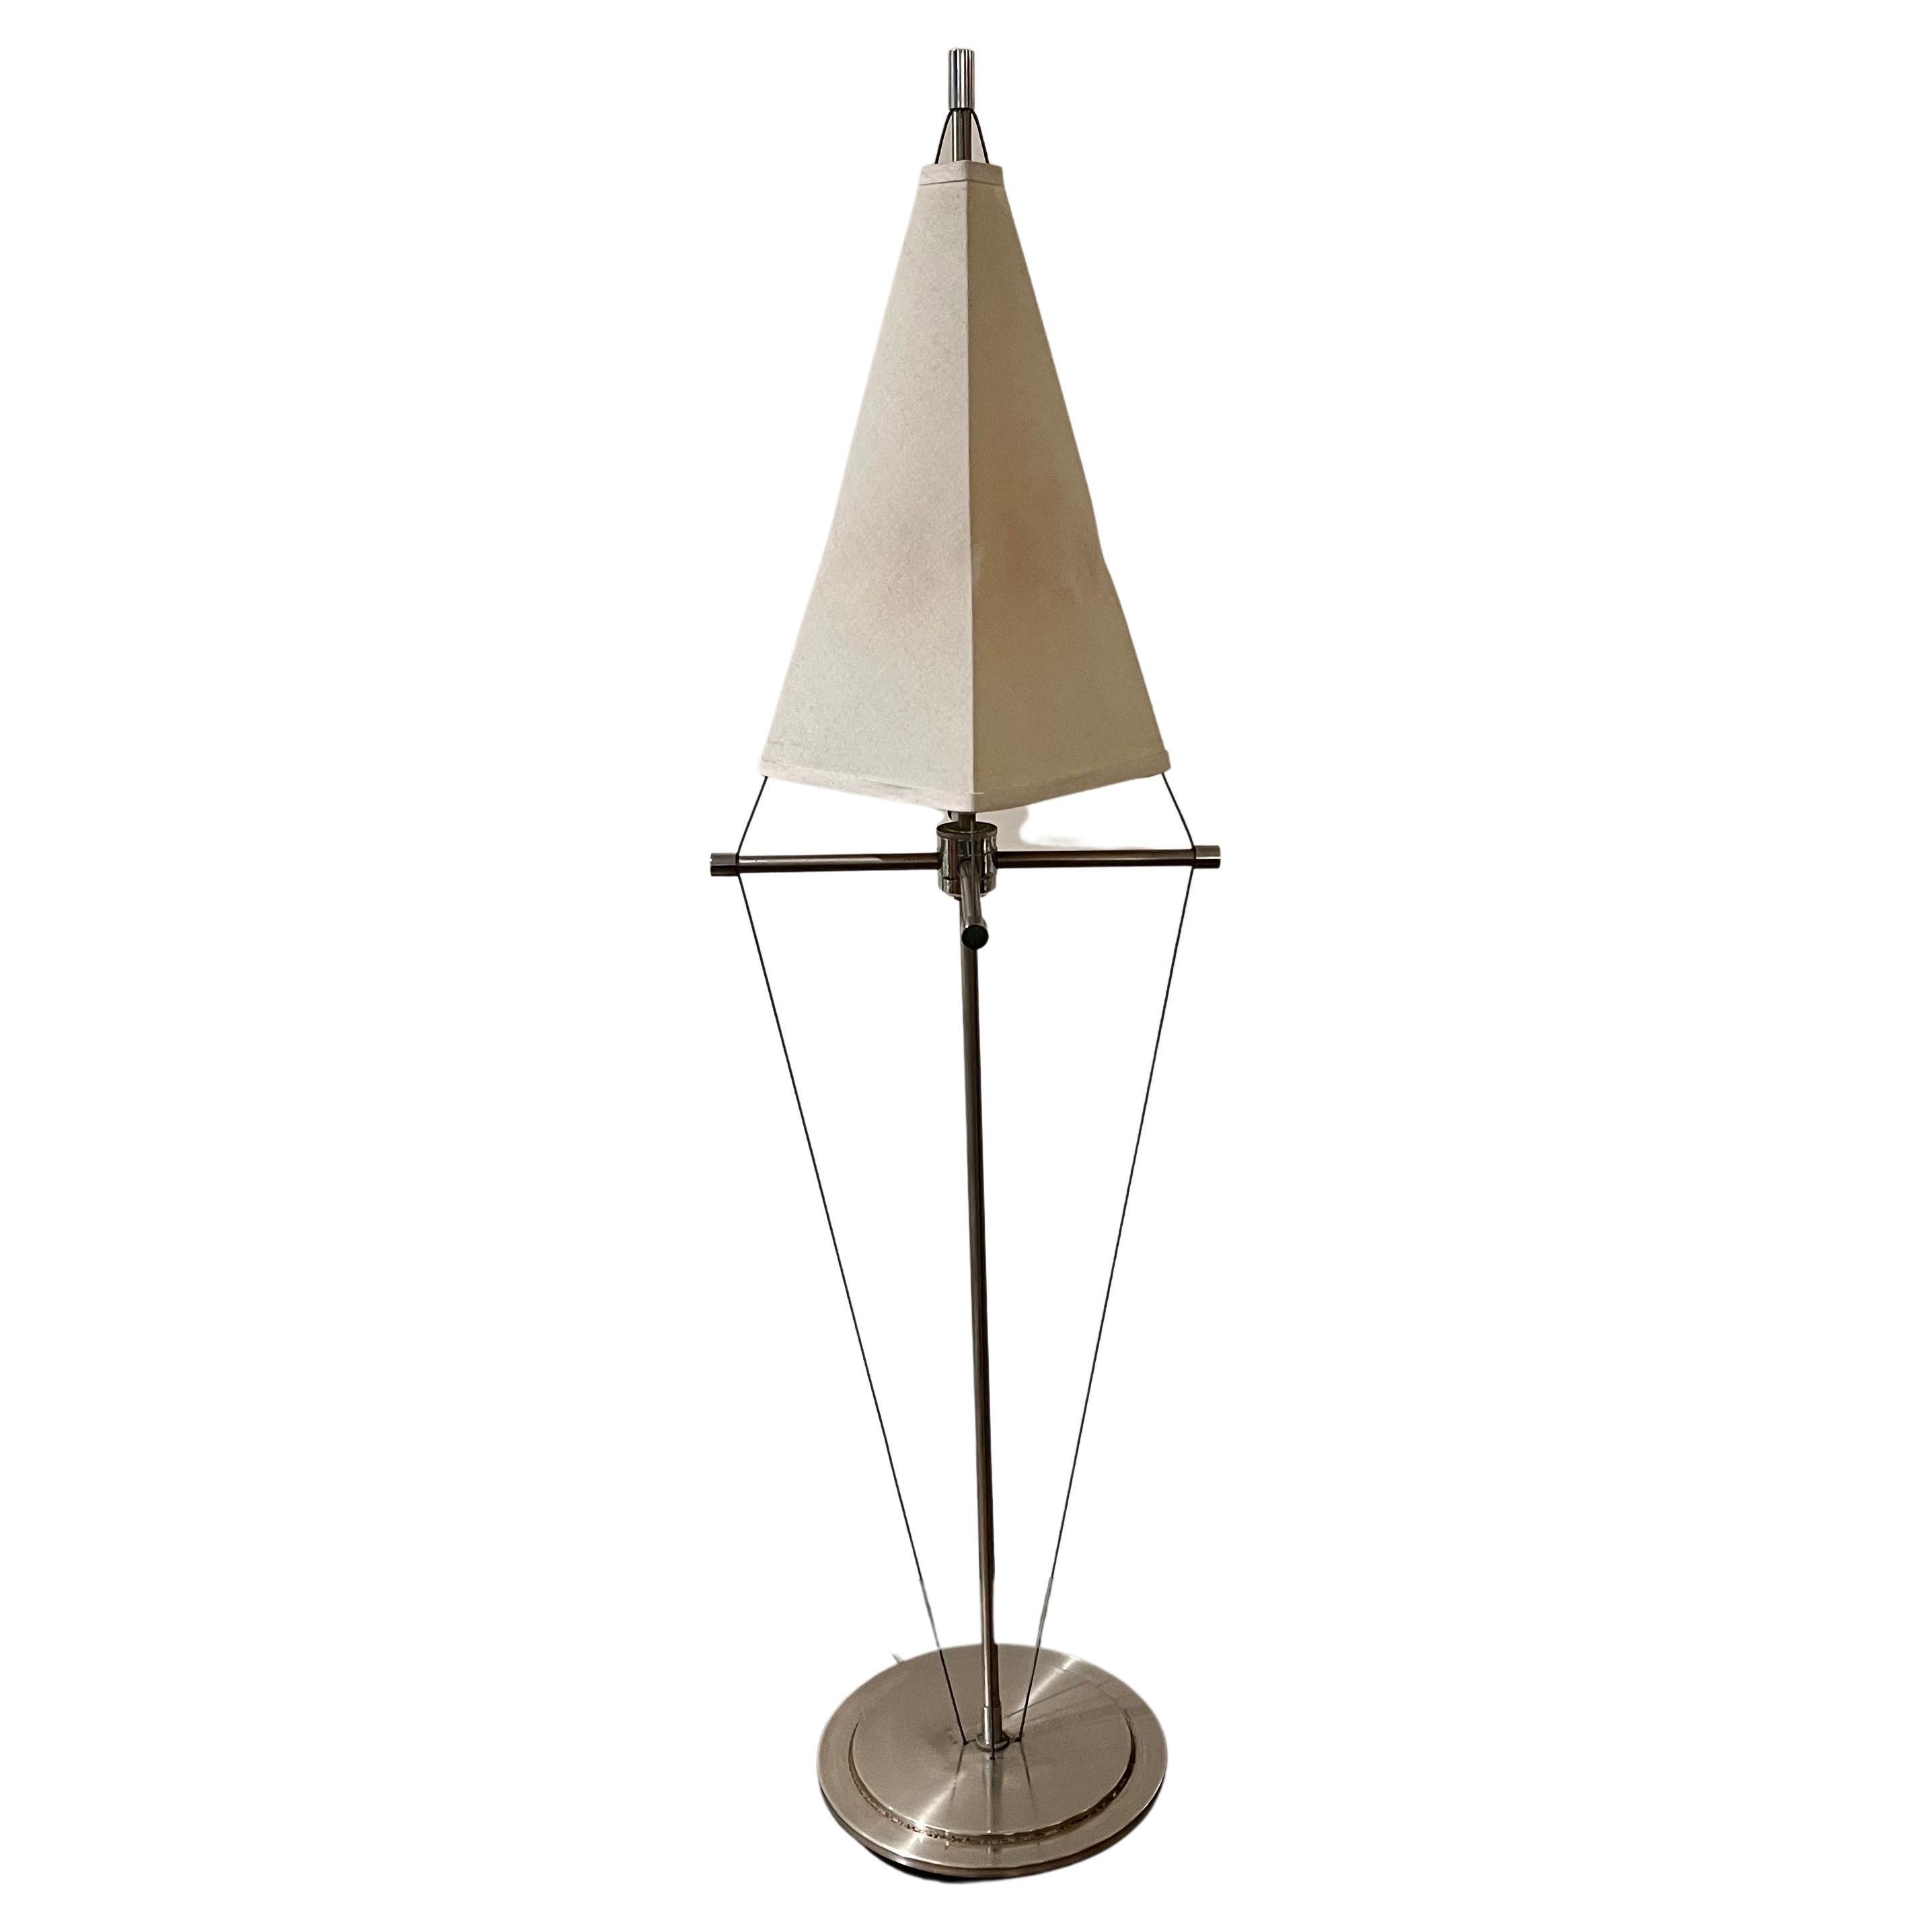 American Postmodern Brushed Stainless Steel Kite Lamp by Robert Sonneman